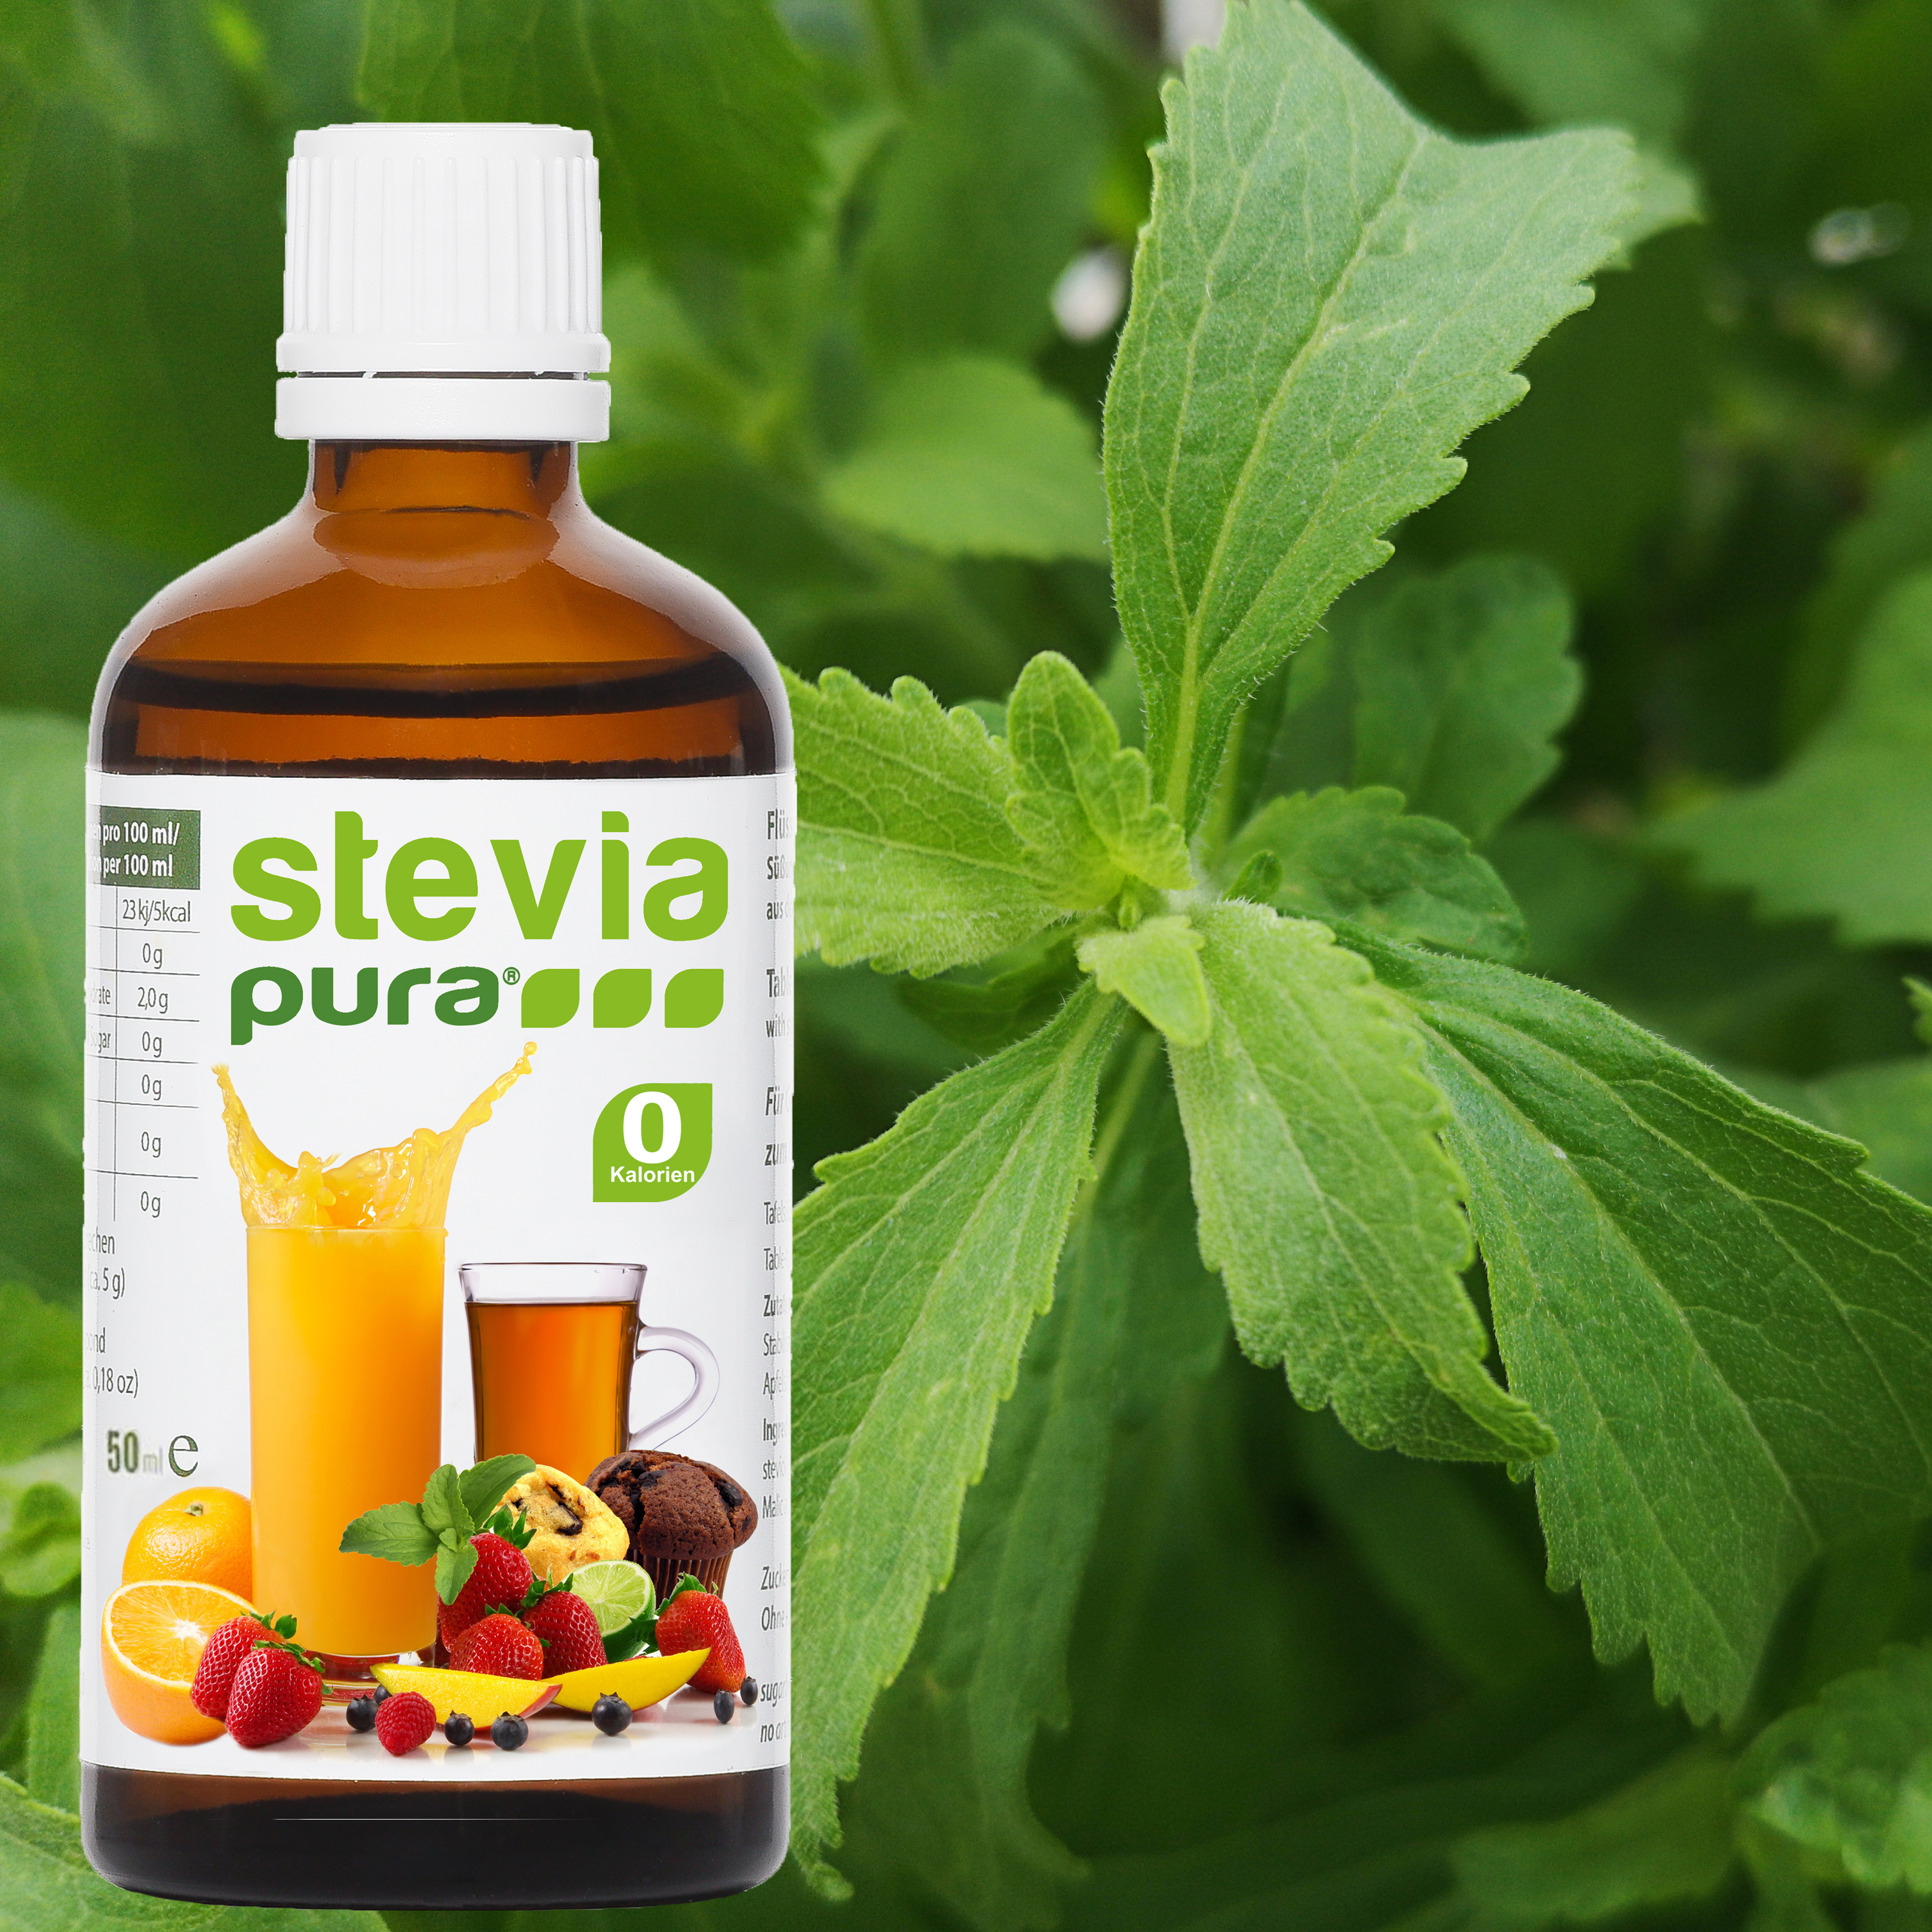 Información sobre el edulcorante líquido Stevia de origen natural procedente de la planta Stevia.